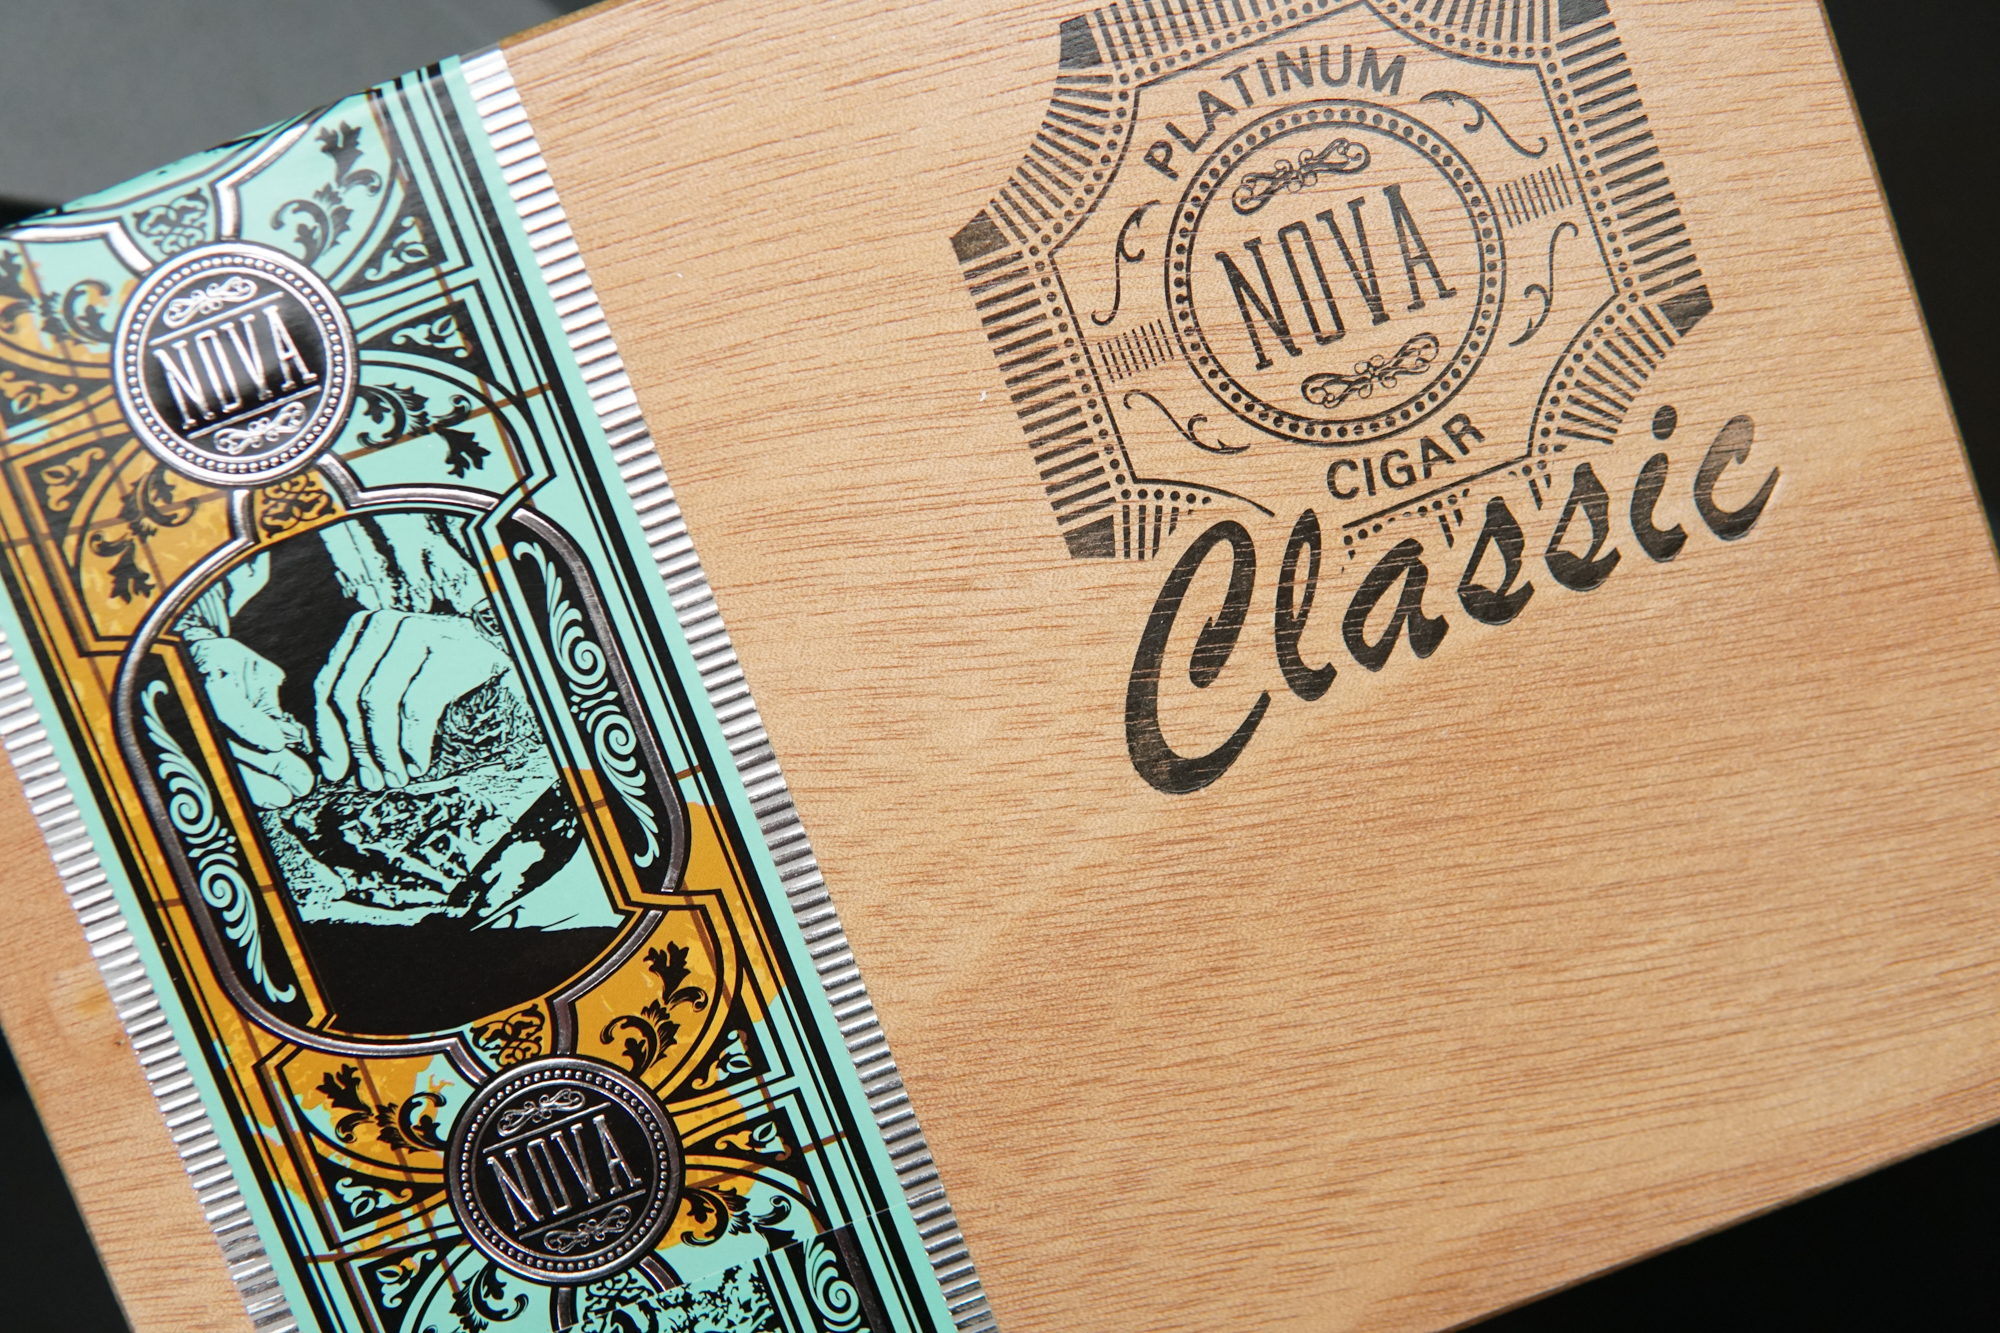 Platinum Nova Classic Cigar Box